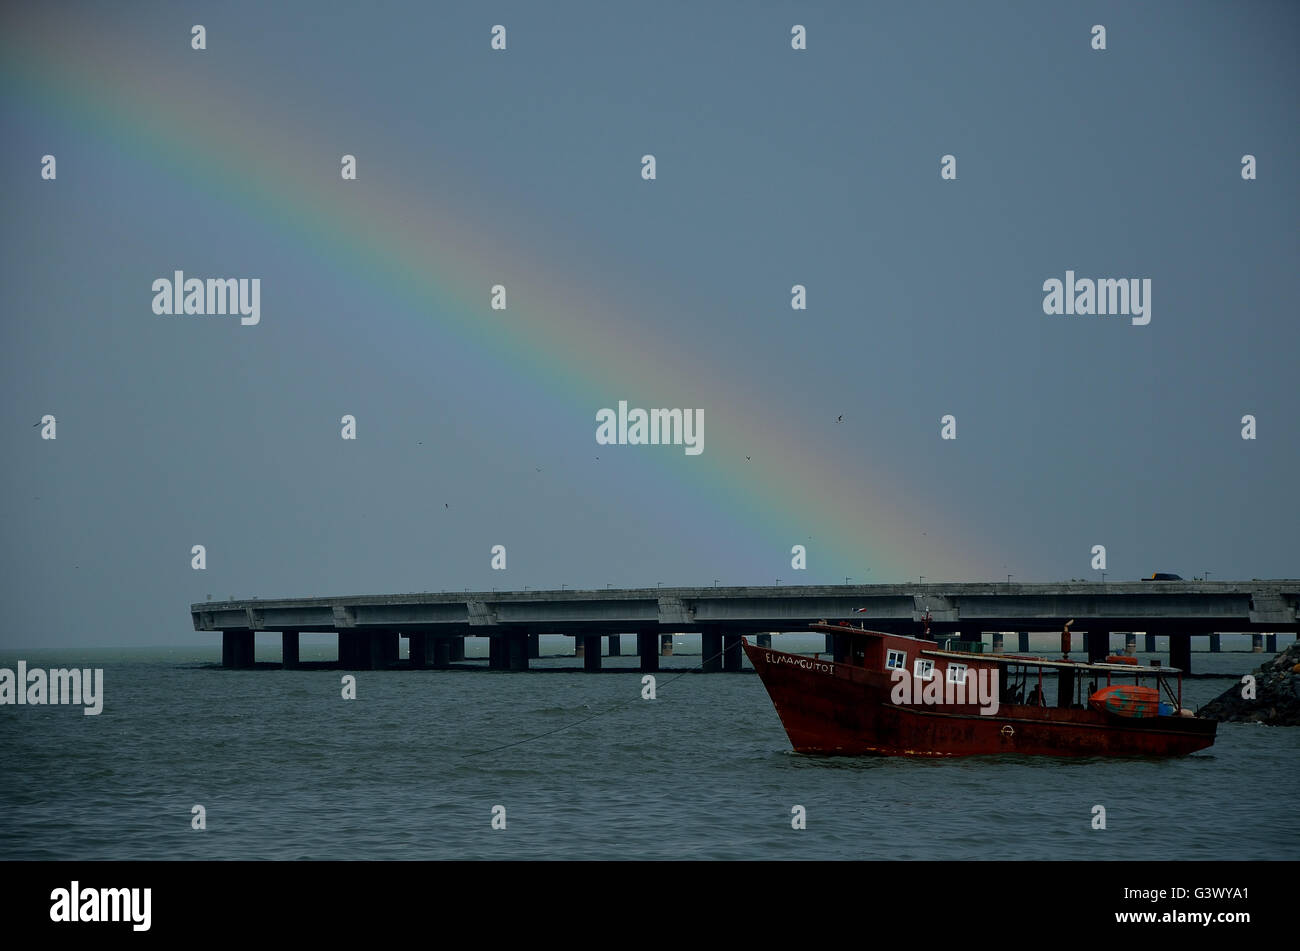 Una barca di soddisfare un arcobaleno in Panama City's Beach. Nazioni Unite barco de Encontro biella arcoiris onu en playa de ciudad de panama. Foto Stock